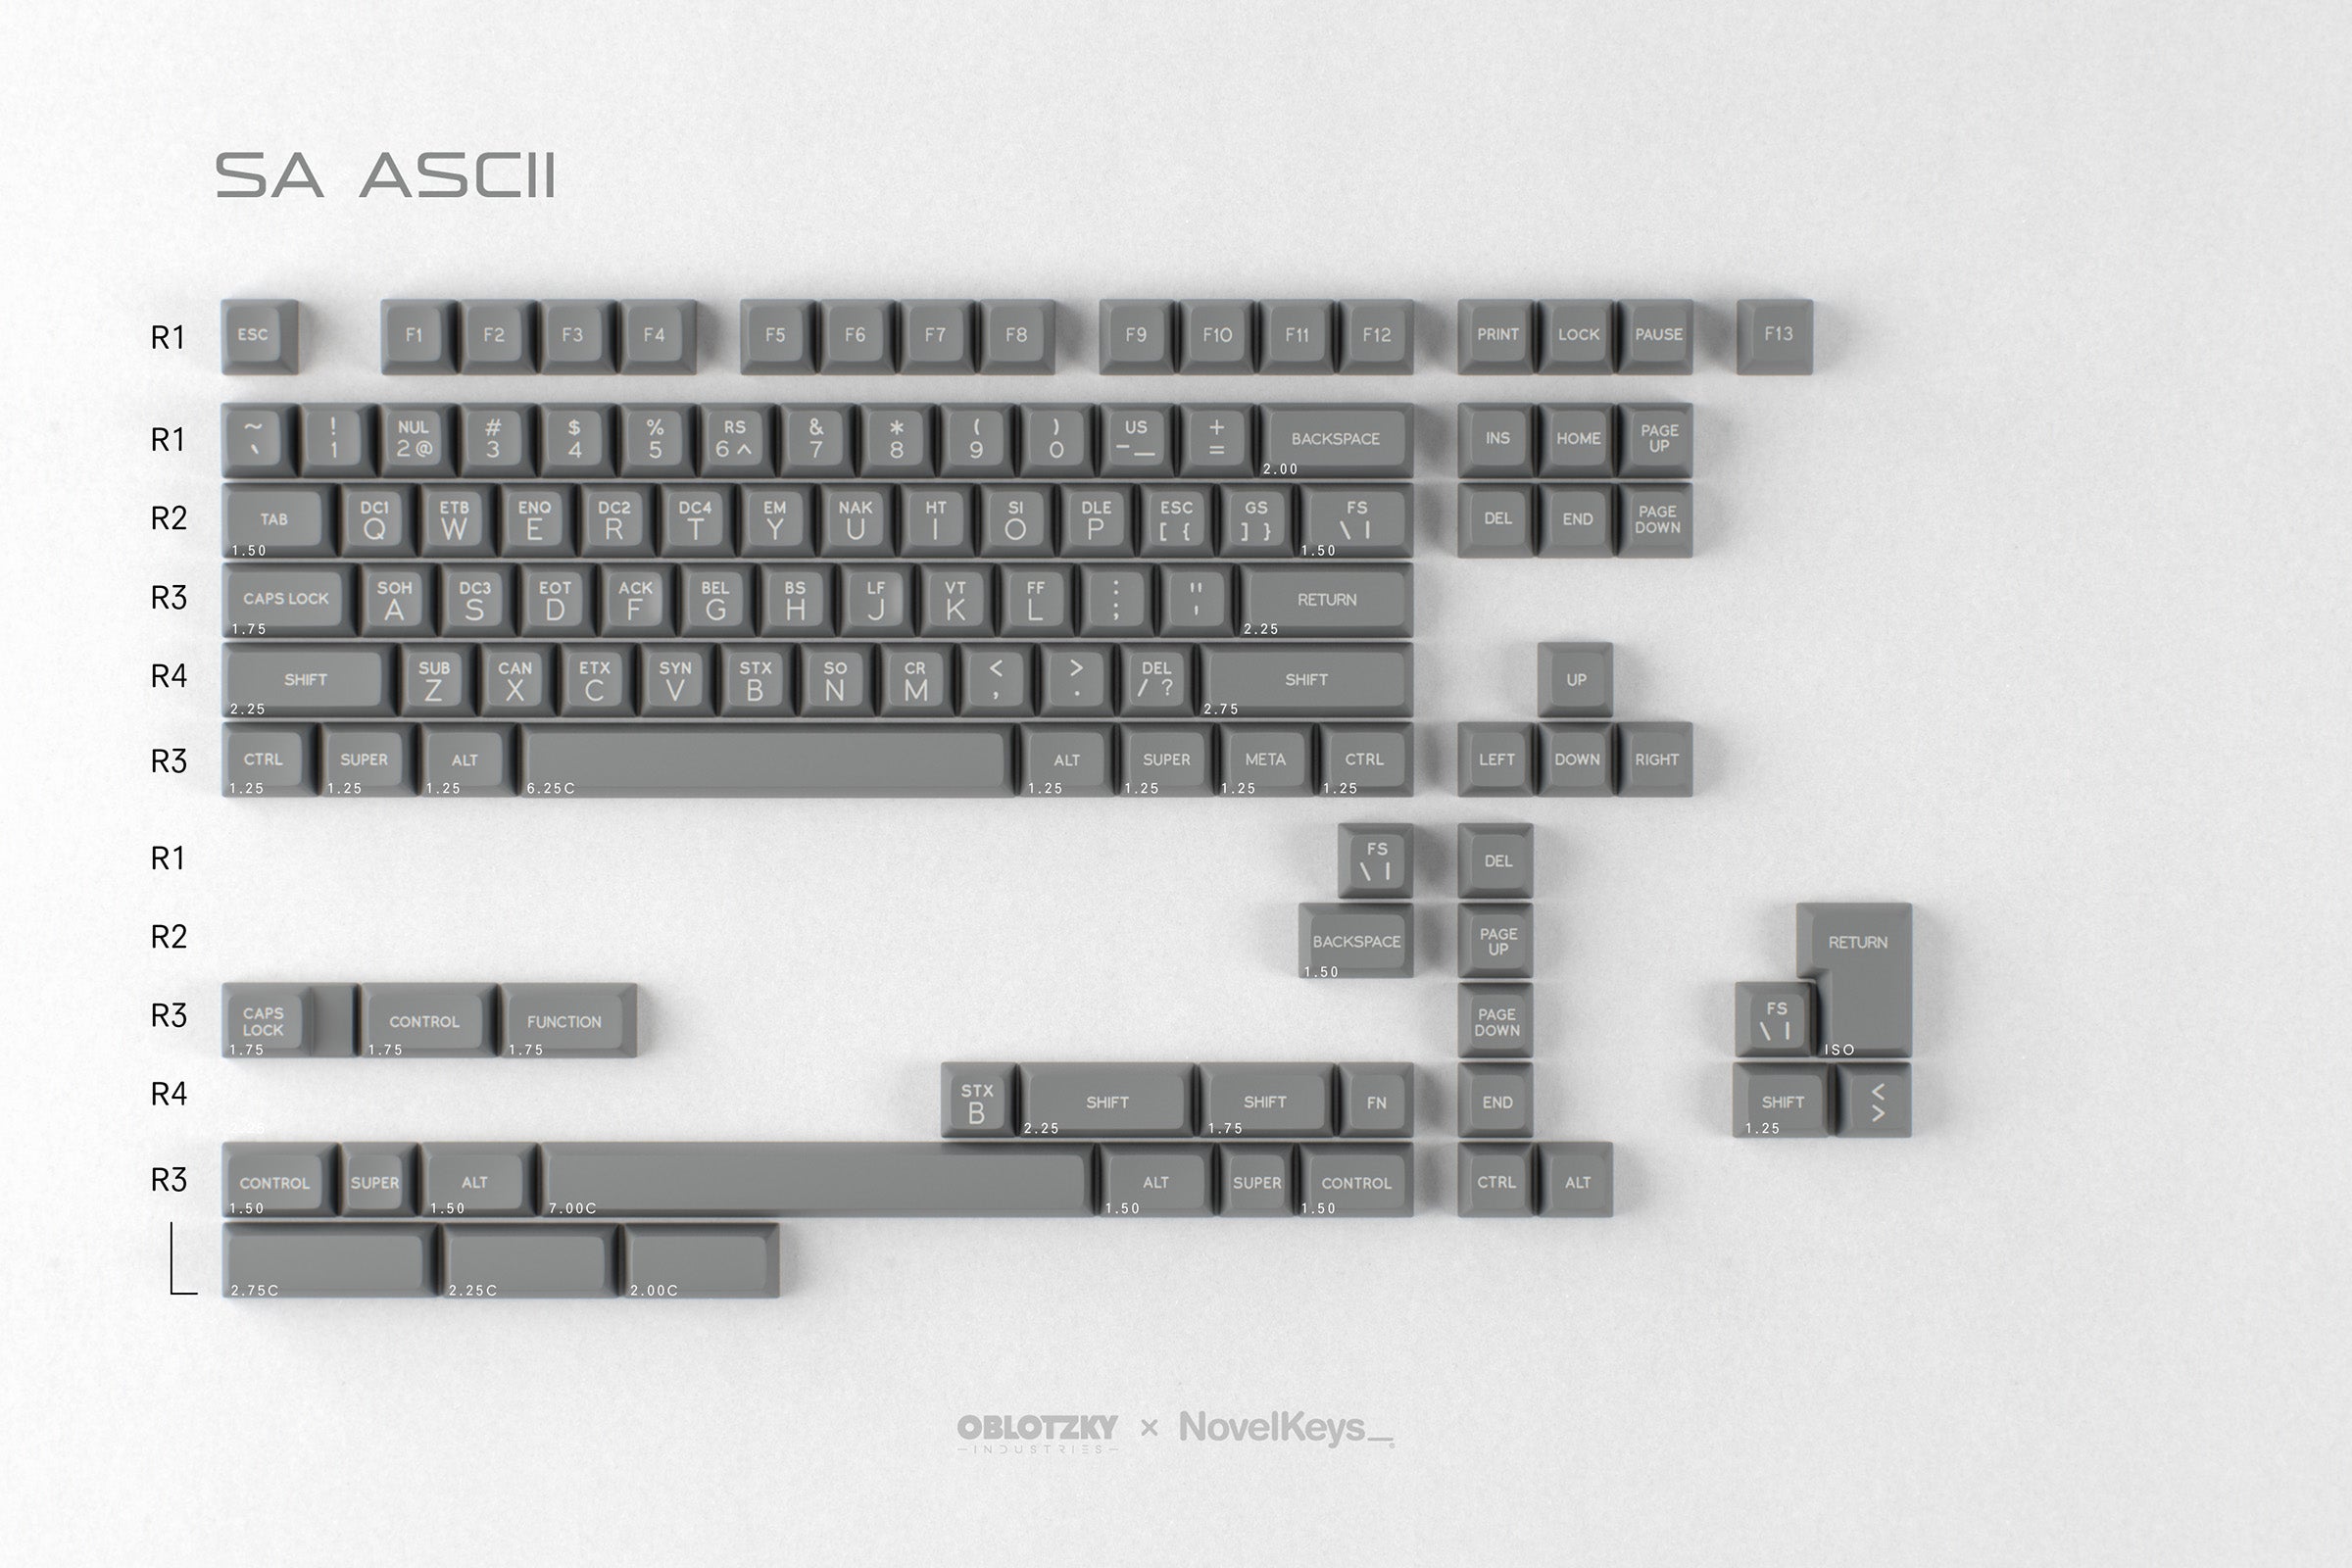 SA ASCII